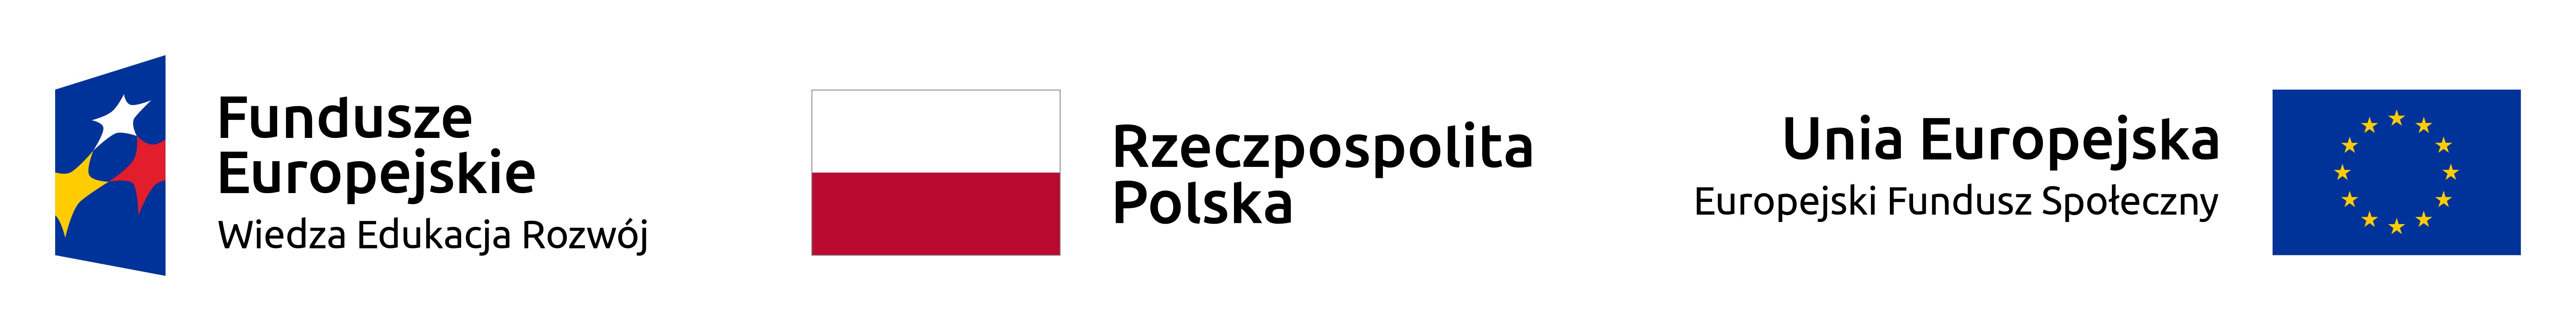 logo_projektowe